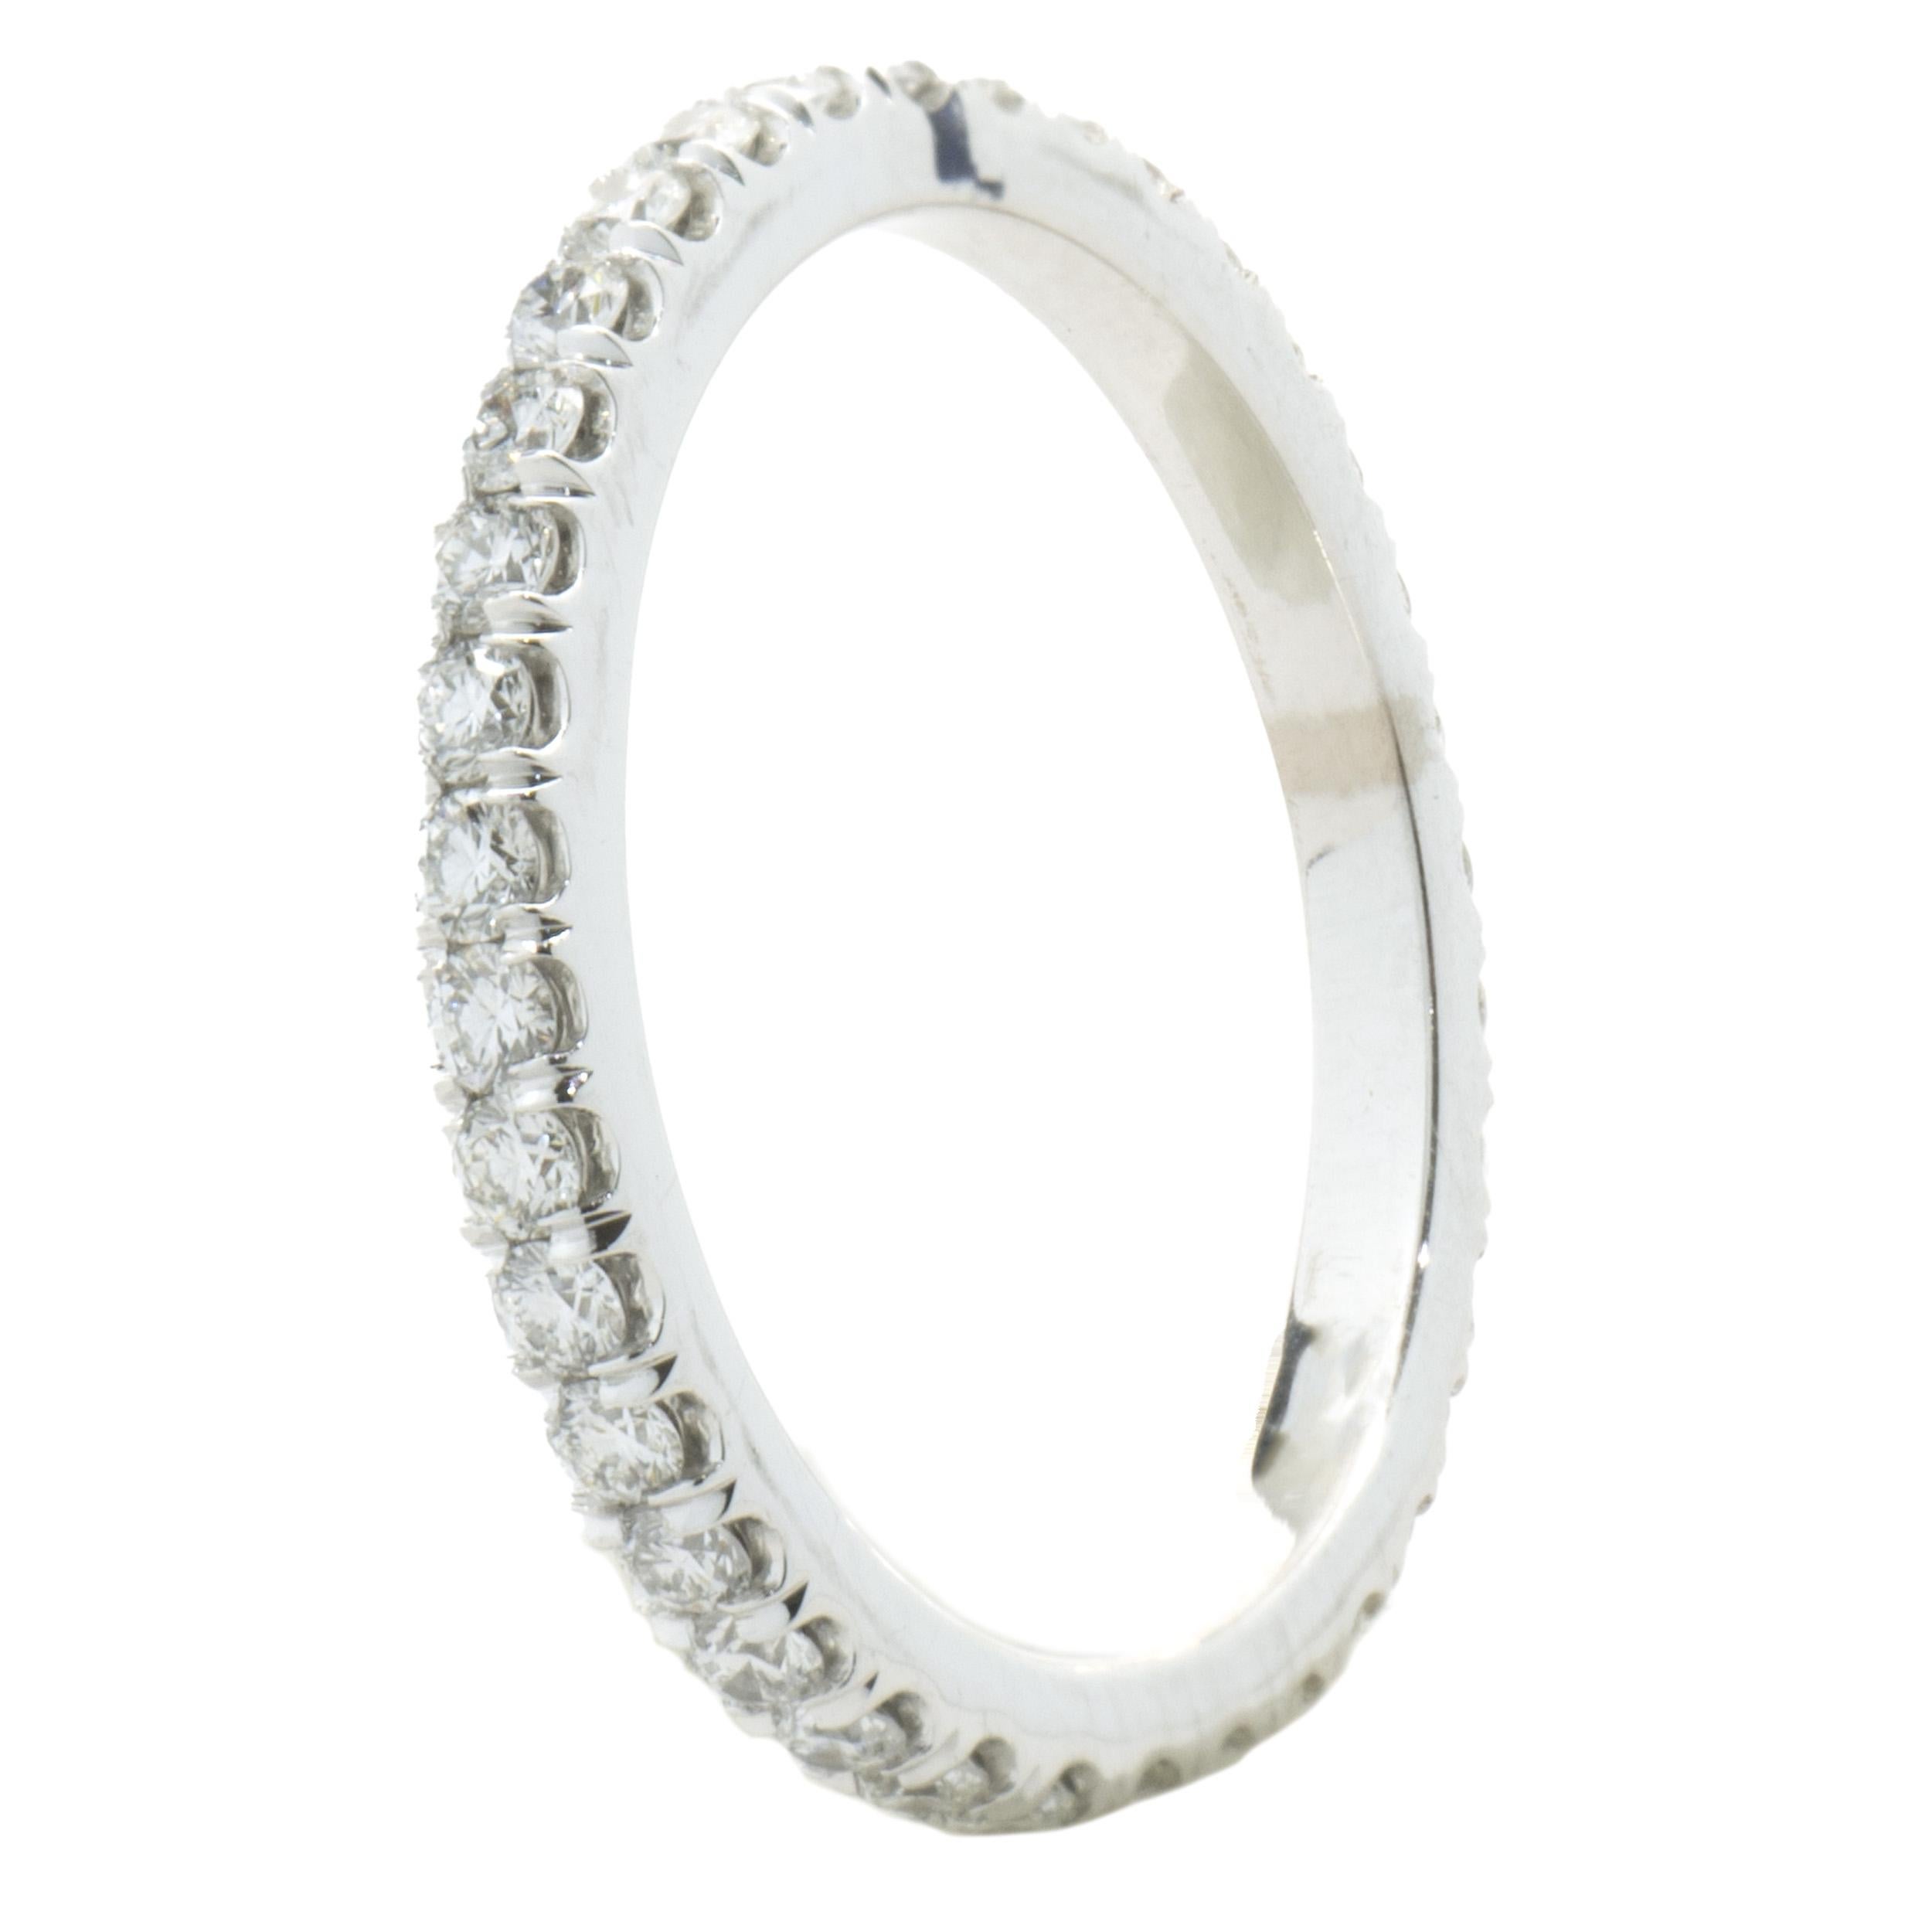 Concepteur : Custom
Matériau : Platine
Diamants : 35 diamants ronds de taille brillant = 0,80cttw
Couleur : F
Clarté : VS1
Taille : 4.5 tailles disponibles 
Dimensions : l'anneau mesure 2 mm de large.
Poids : 1.88 grammes
